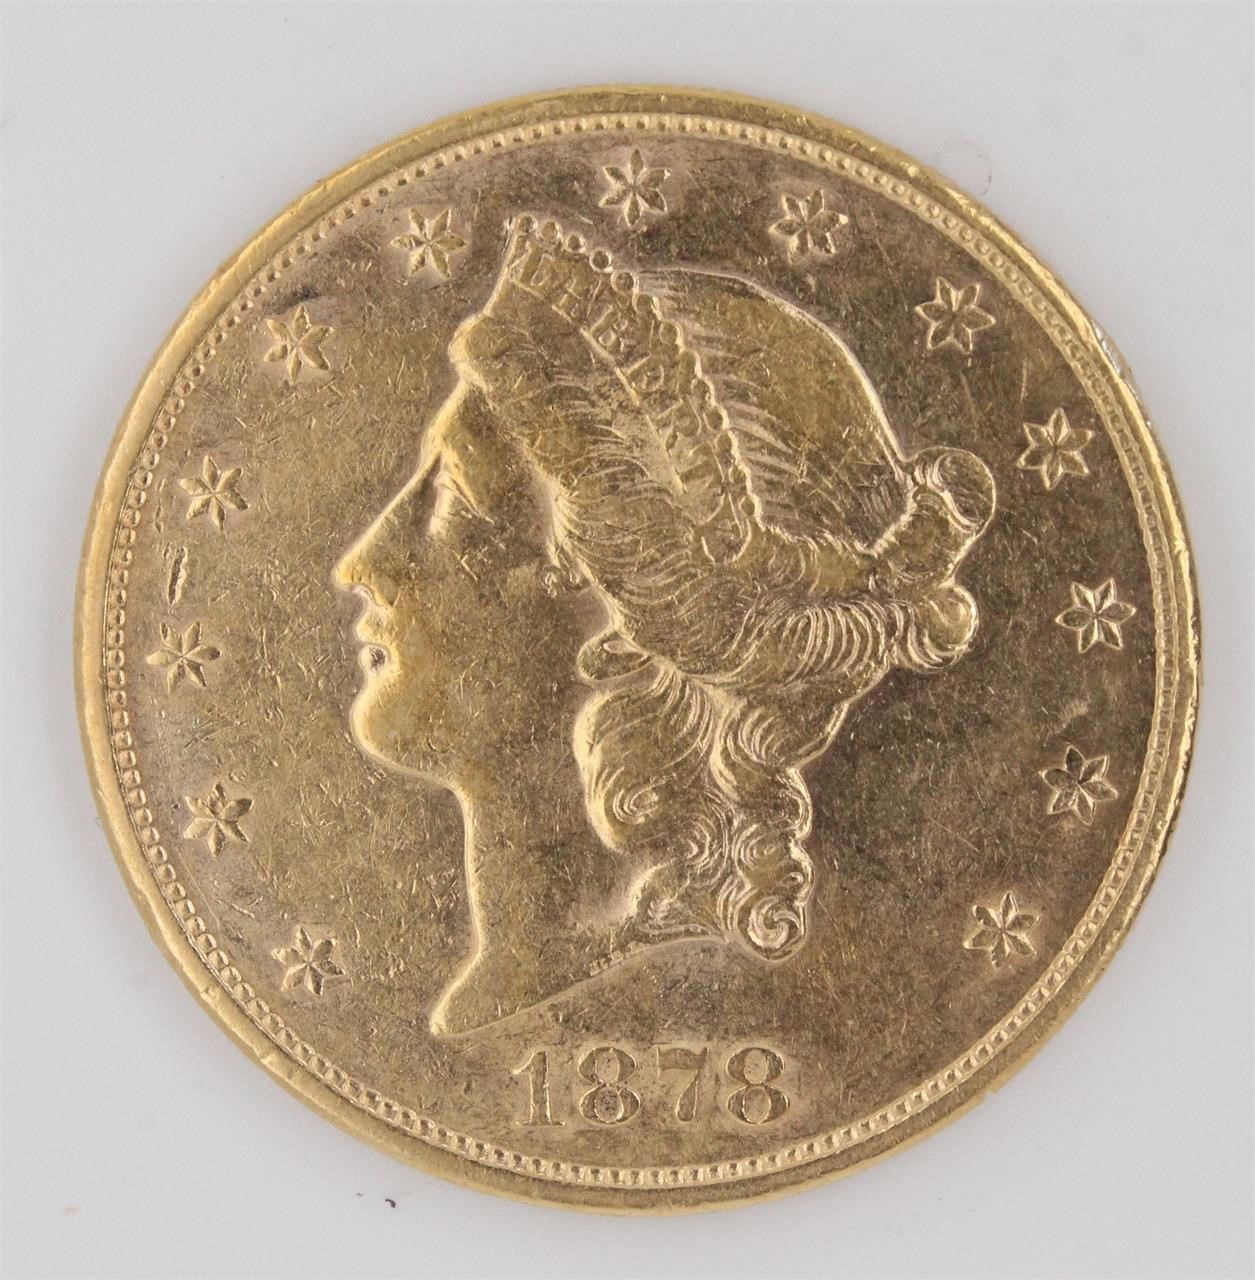 Rare Gold Coin Collection, Pandas, US Gold Coins